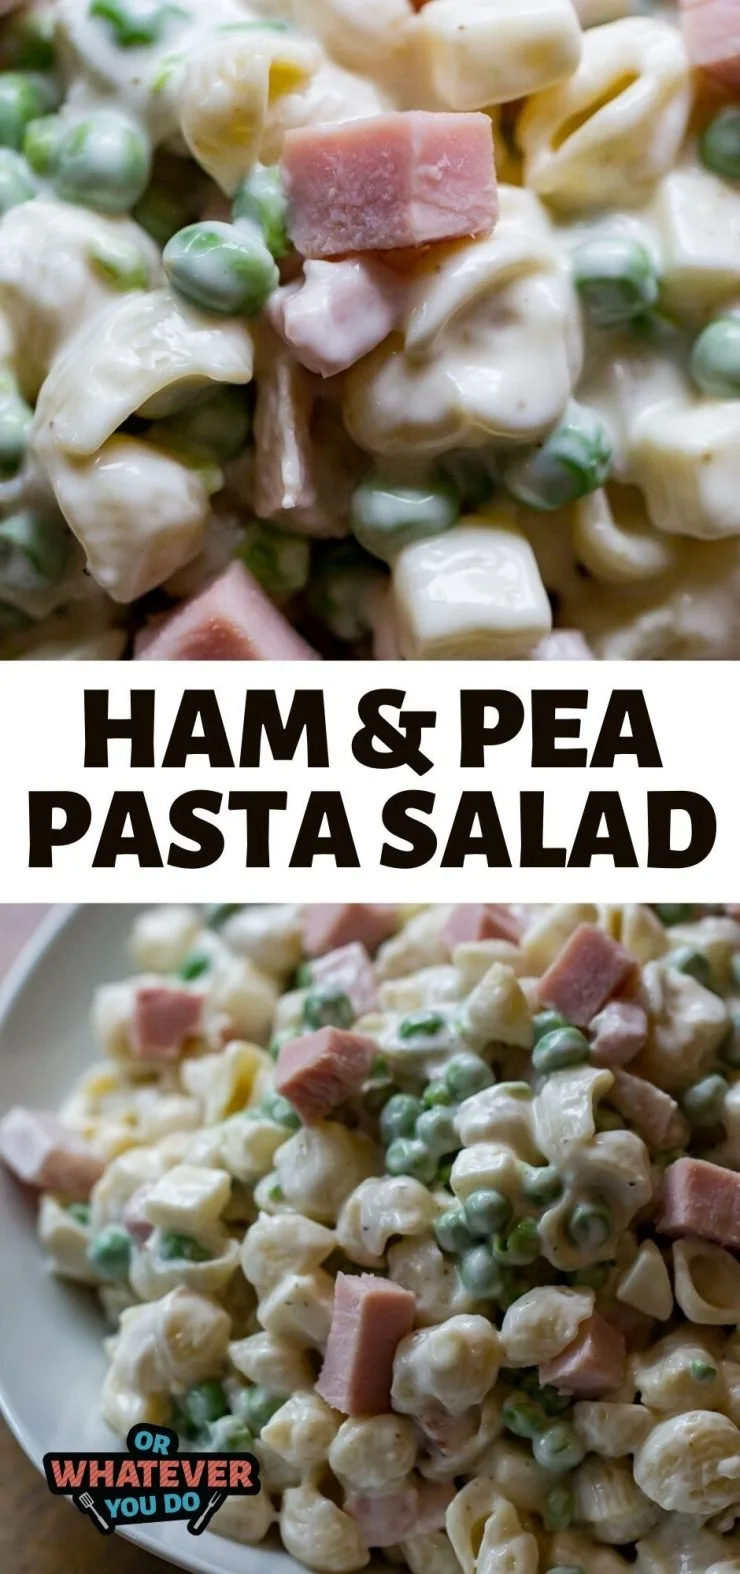 Ham & Pea Pasta Salad